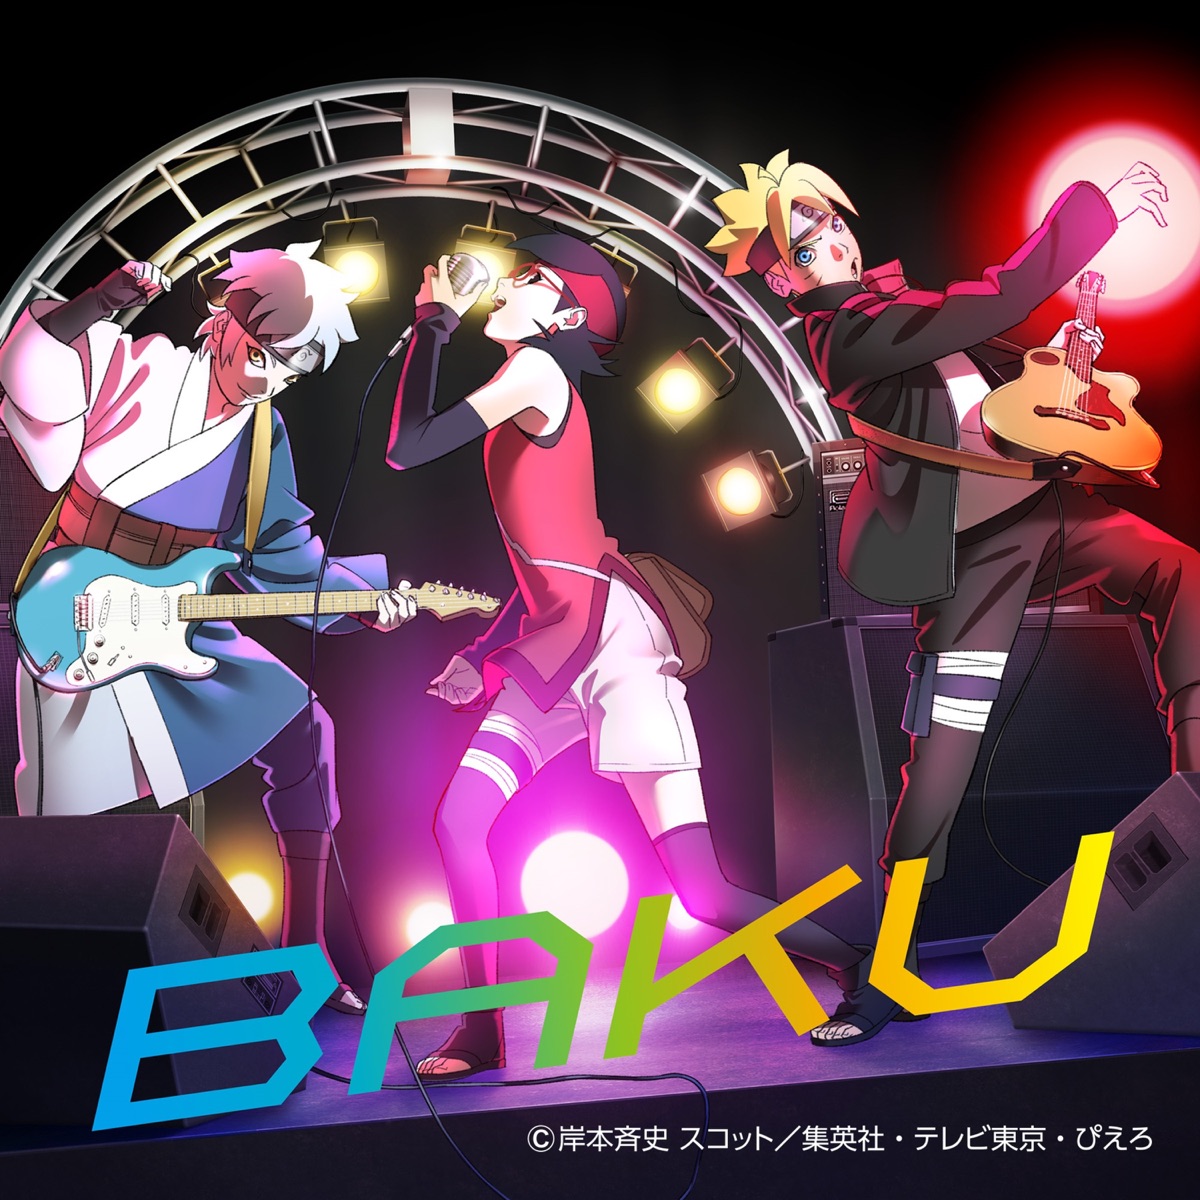 『いきものがかり - BAKU』収録の『BAKU』ジャケット